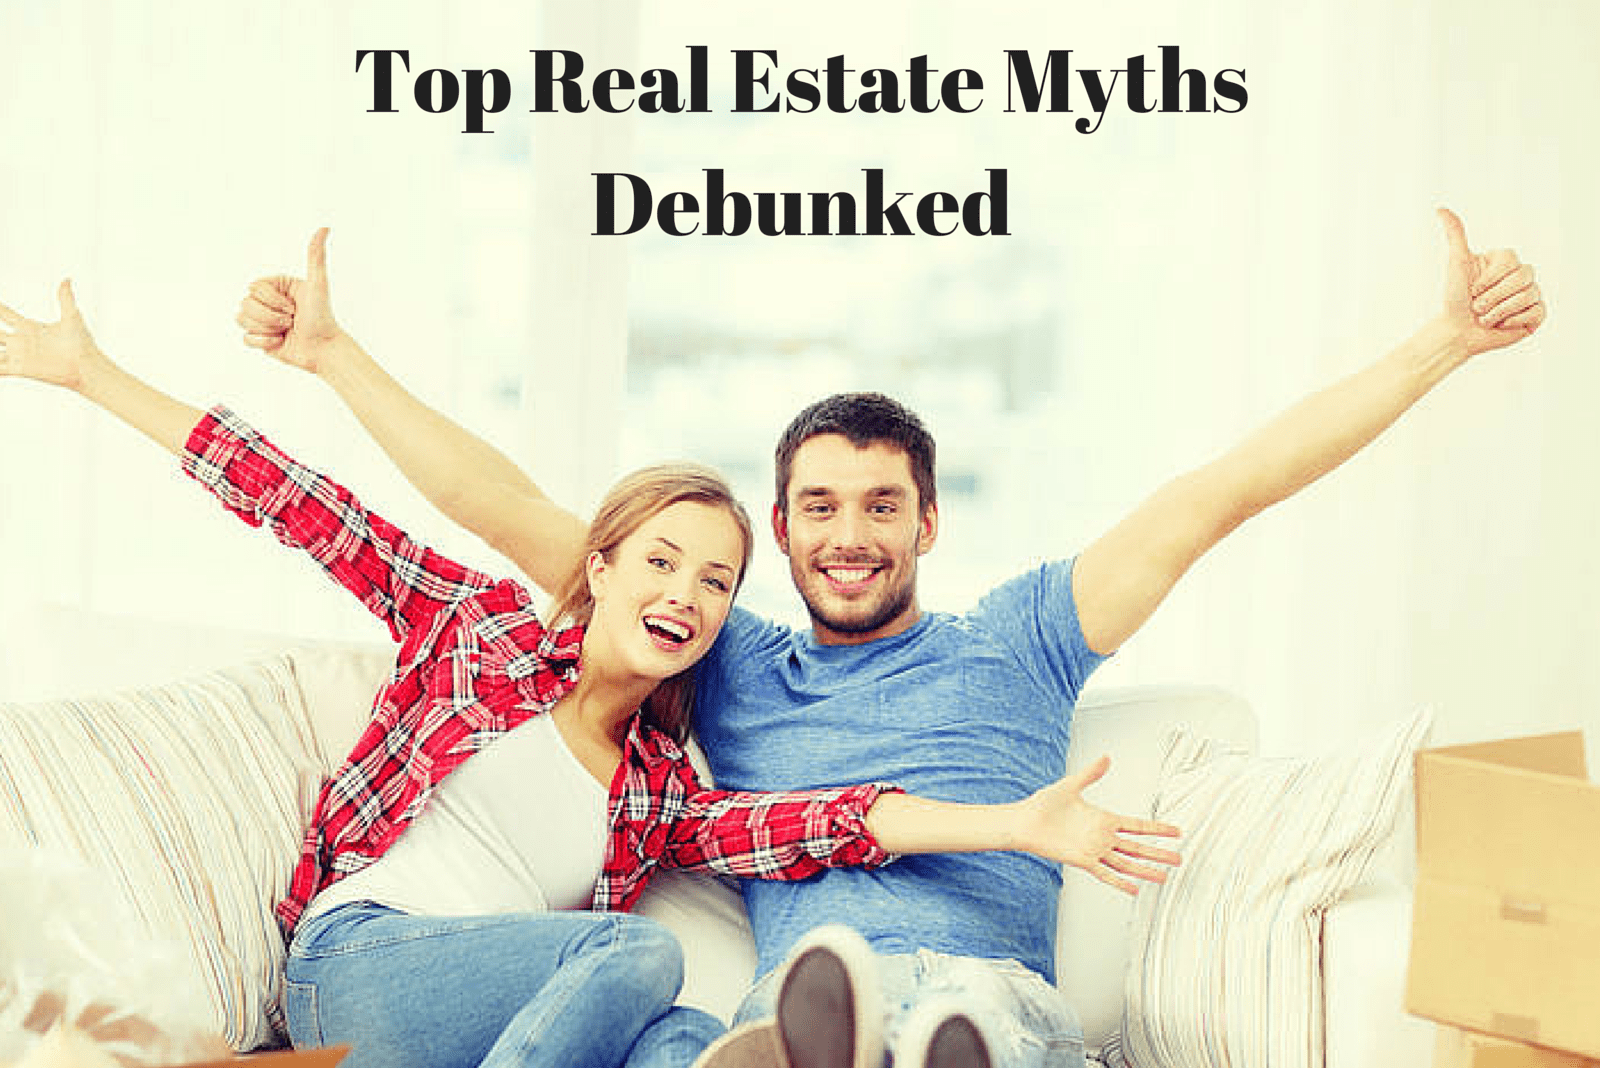 Top Real Estate Myths Debunked